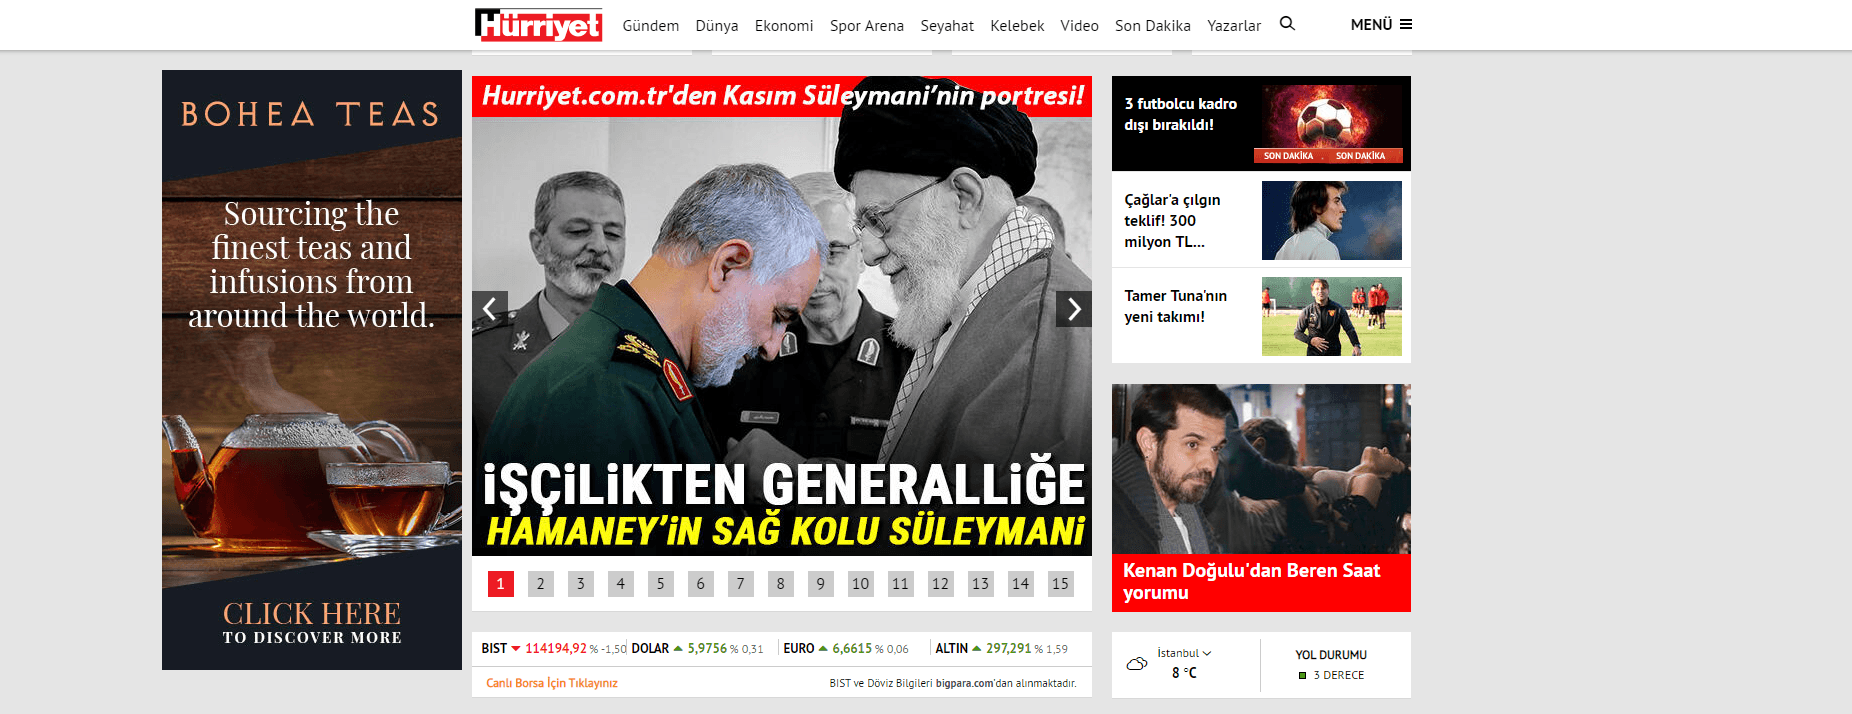 Kako su mediji prenijeli vijest o ubistvu generala Sulejmanija - Avaz